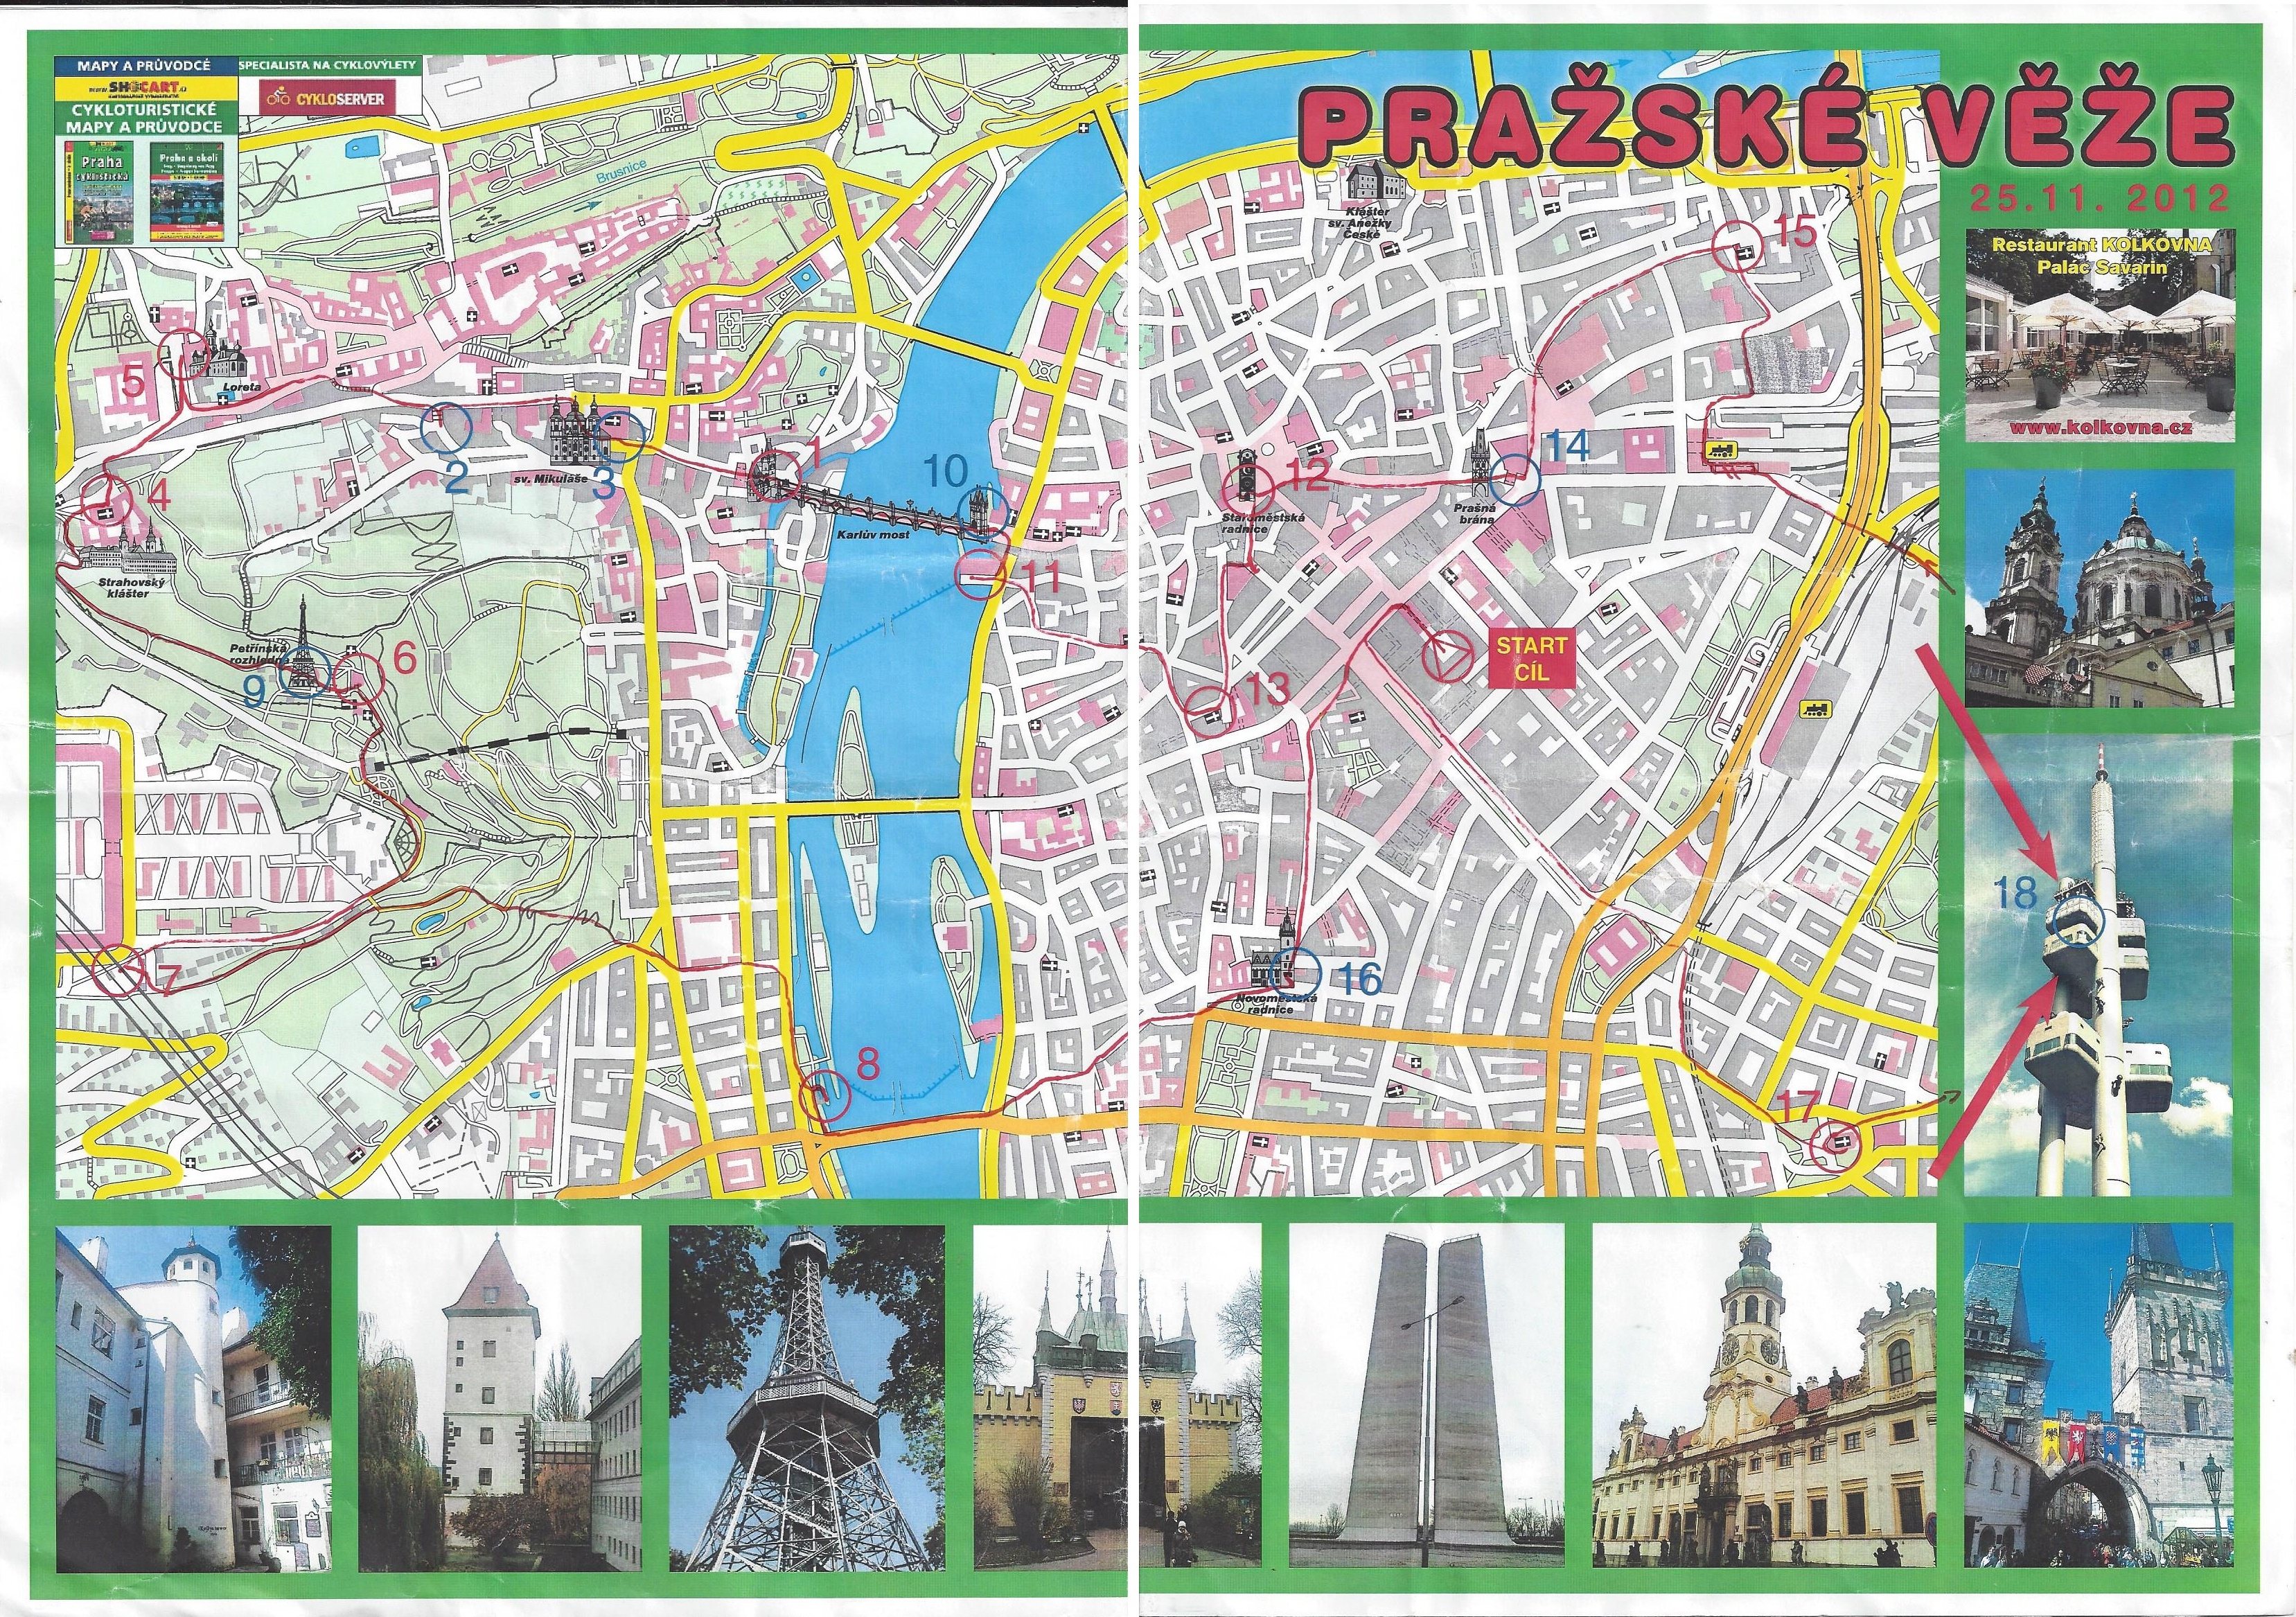 Pražské věže (25-11-2012)